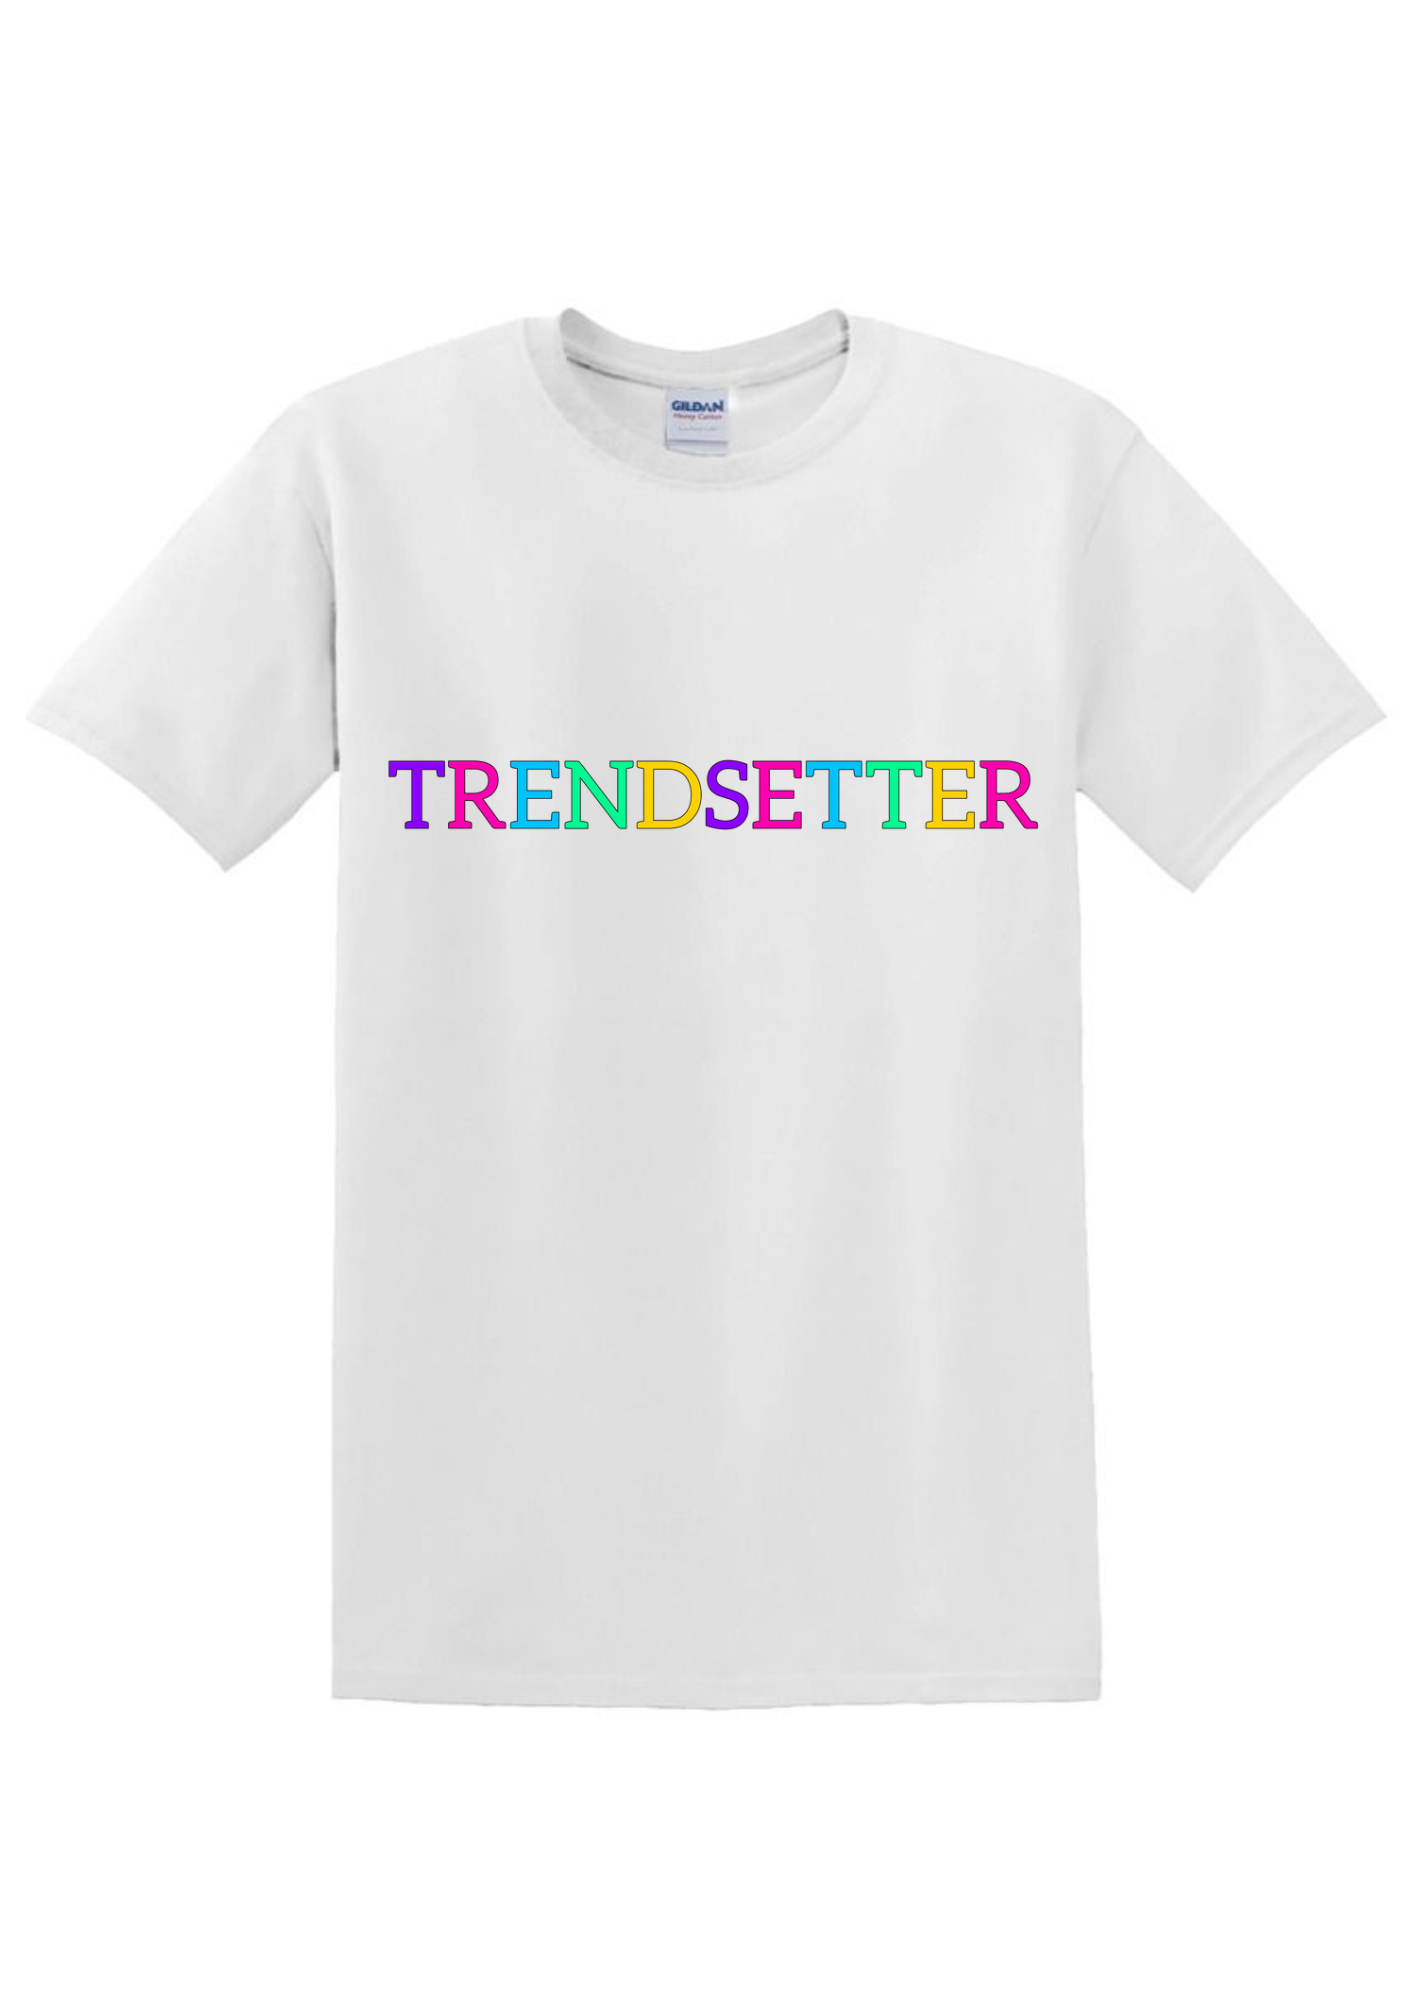 Trendsetter T-Shirt for Sale